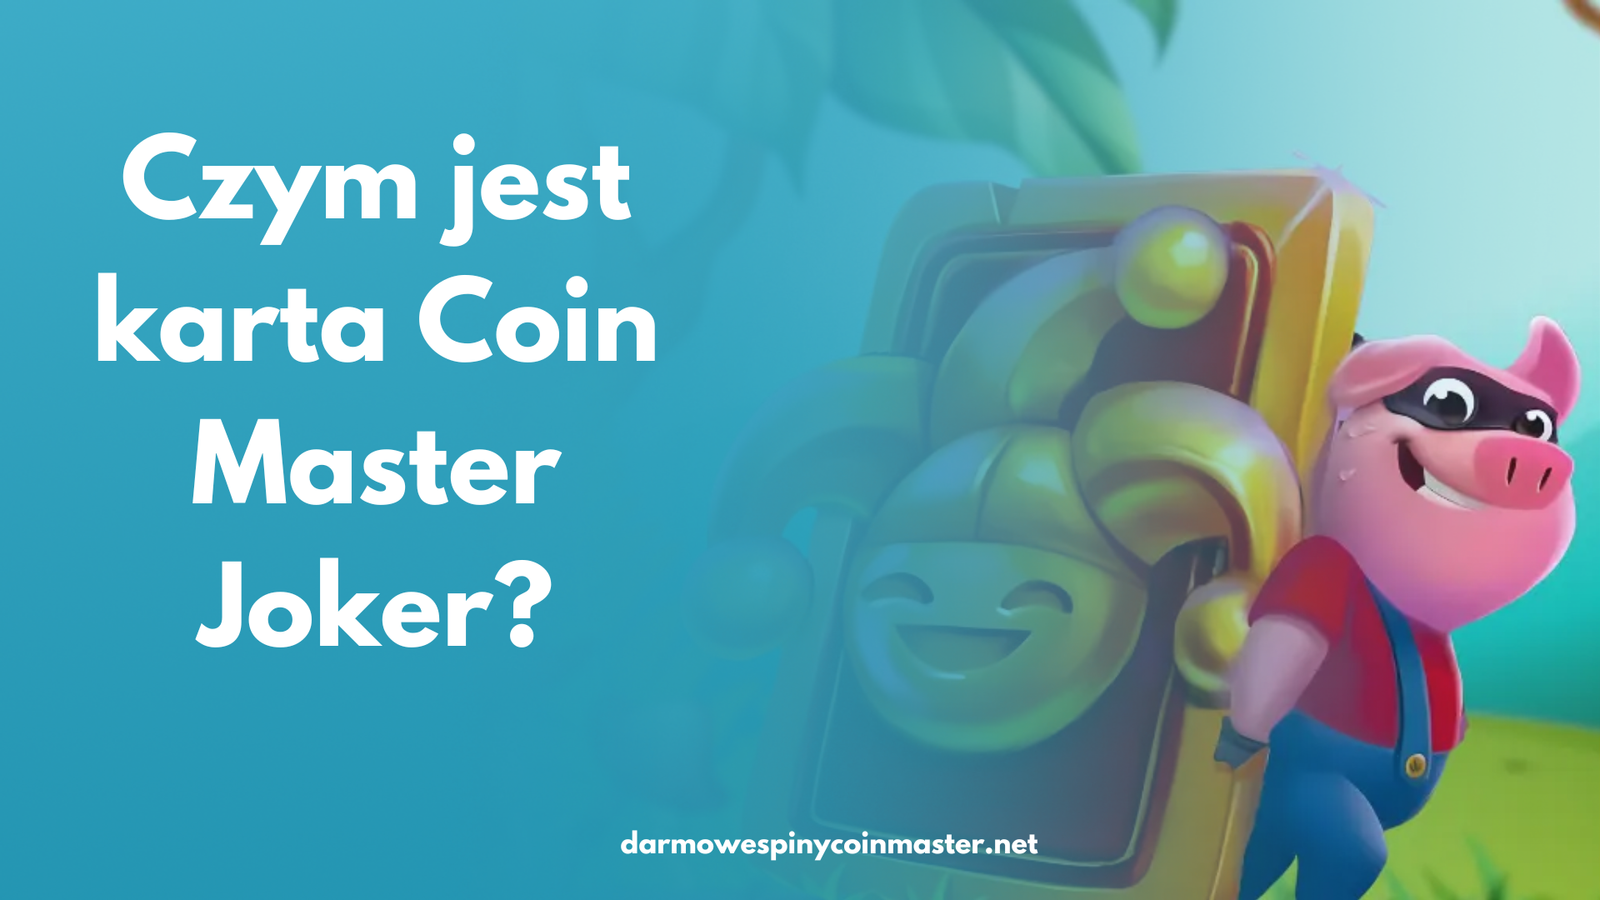 Czym jest karta Coin Master Joker?